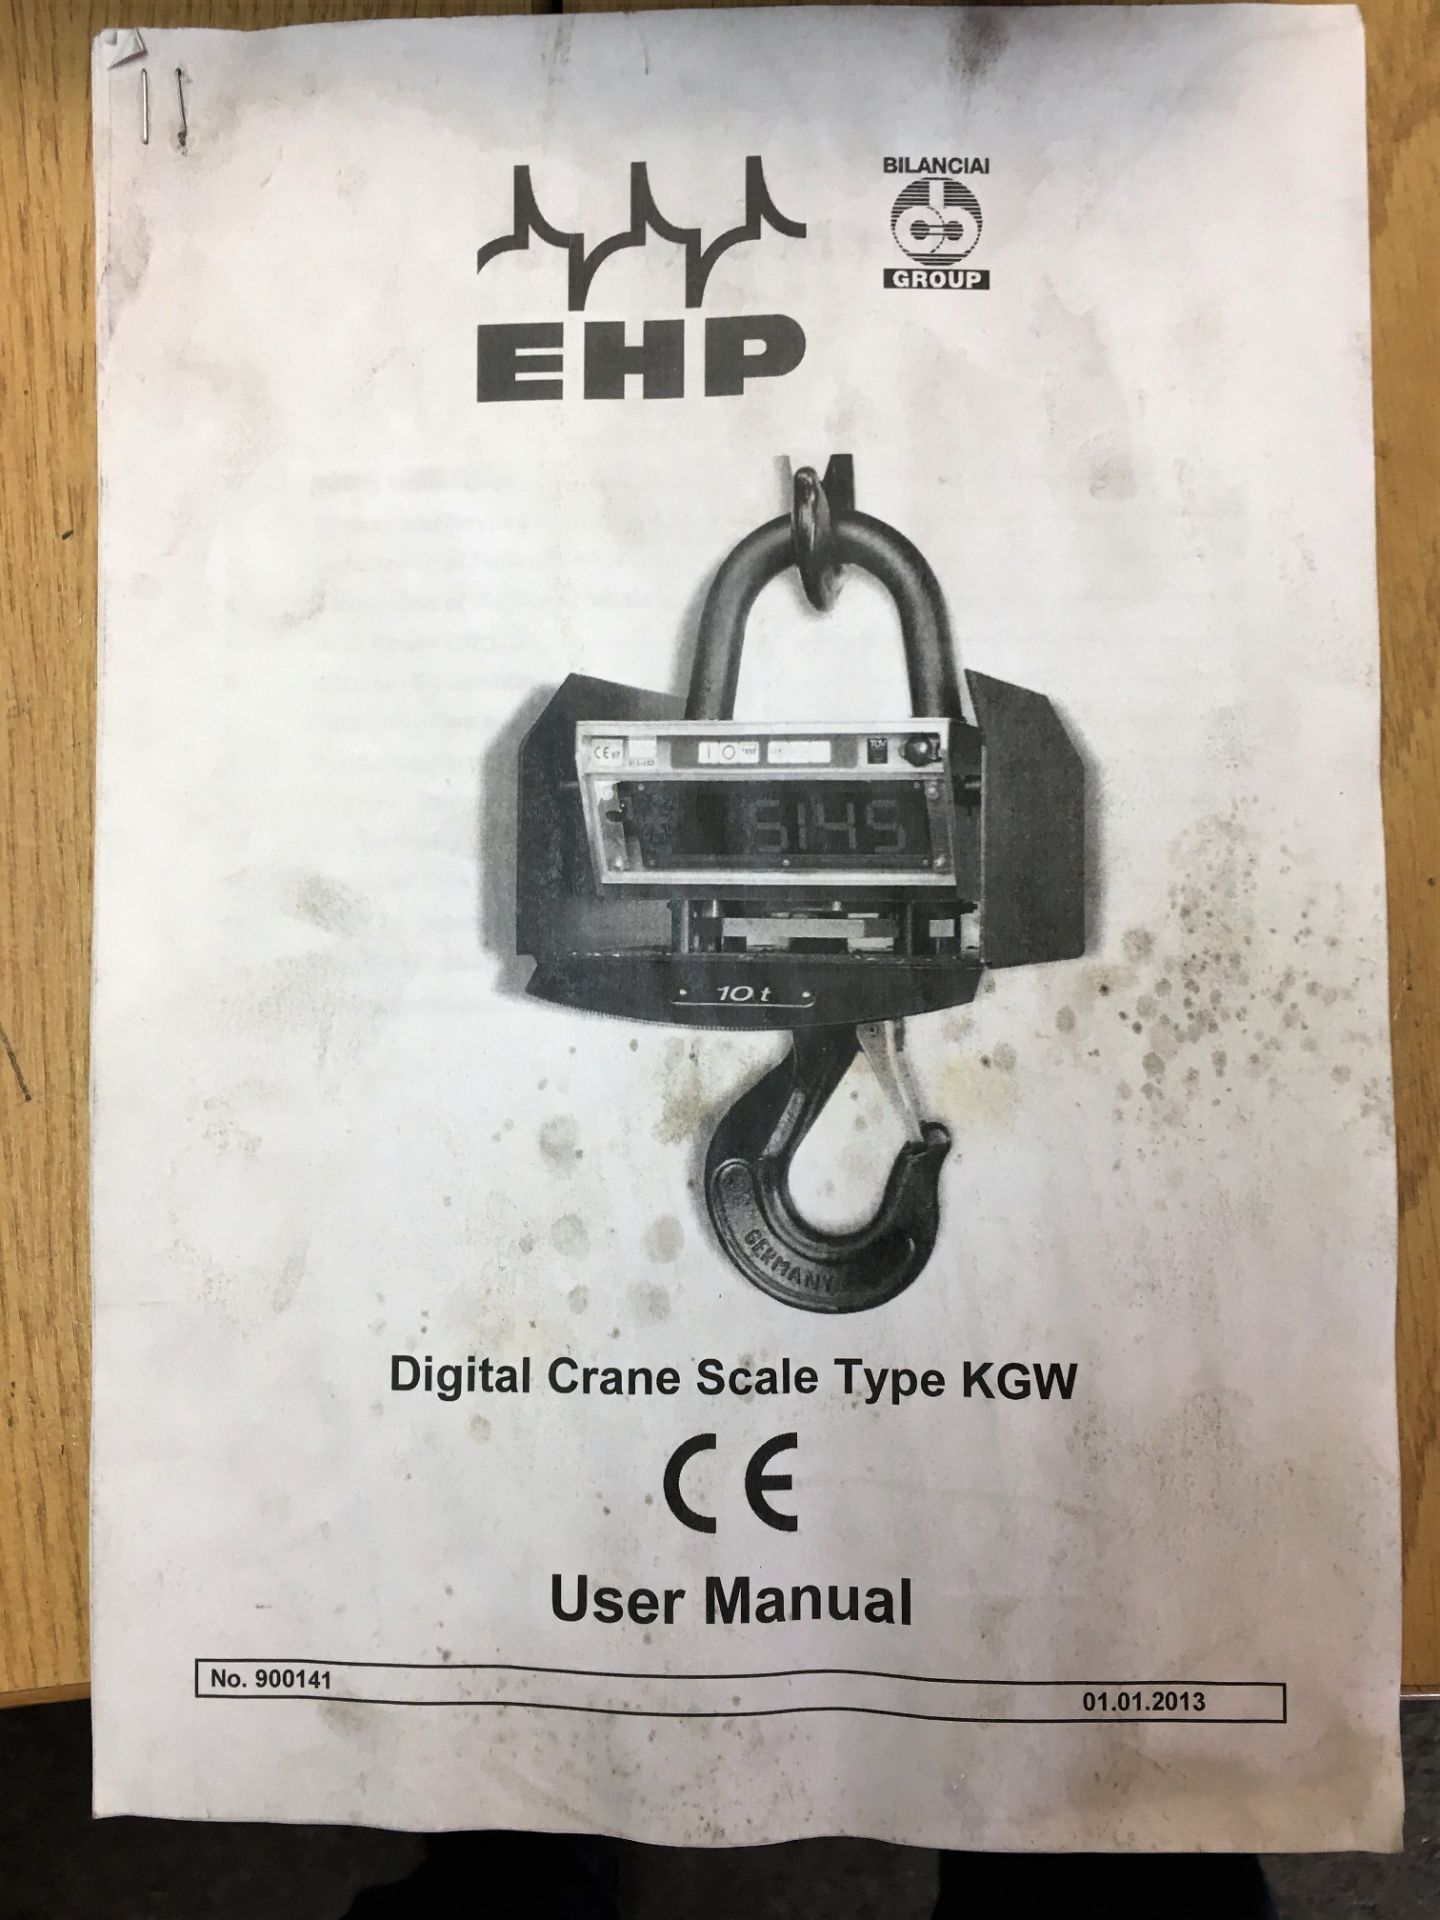 EHP 2000Kg Digital Crane Scale. - Image 4 of 4